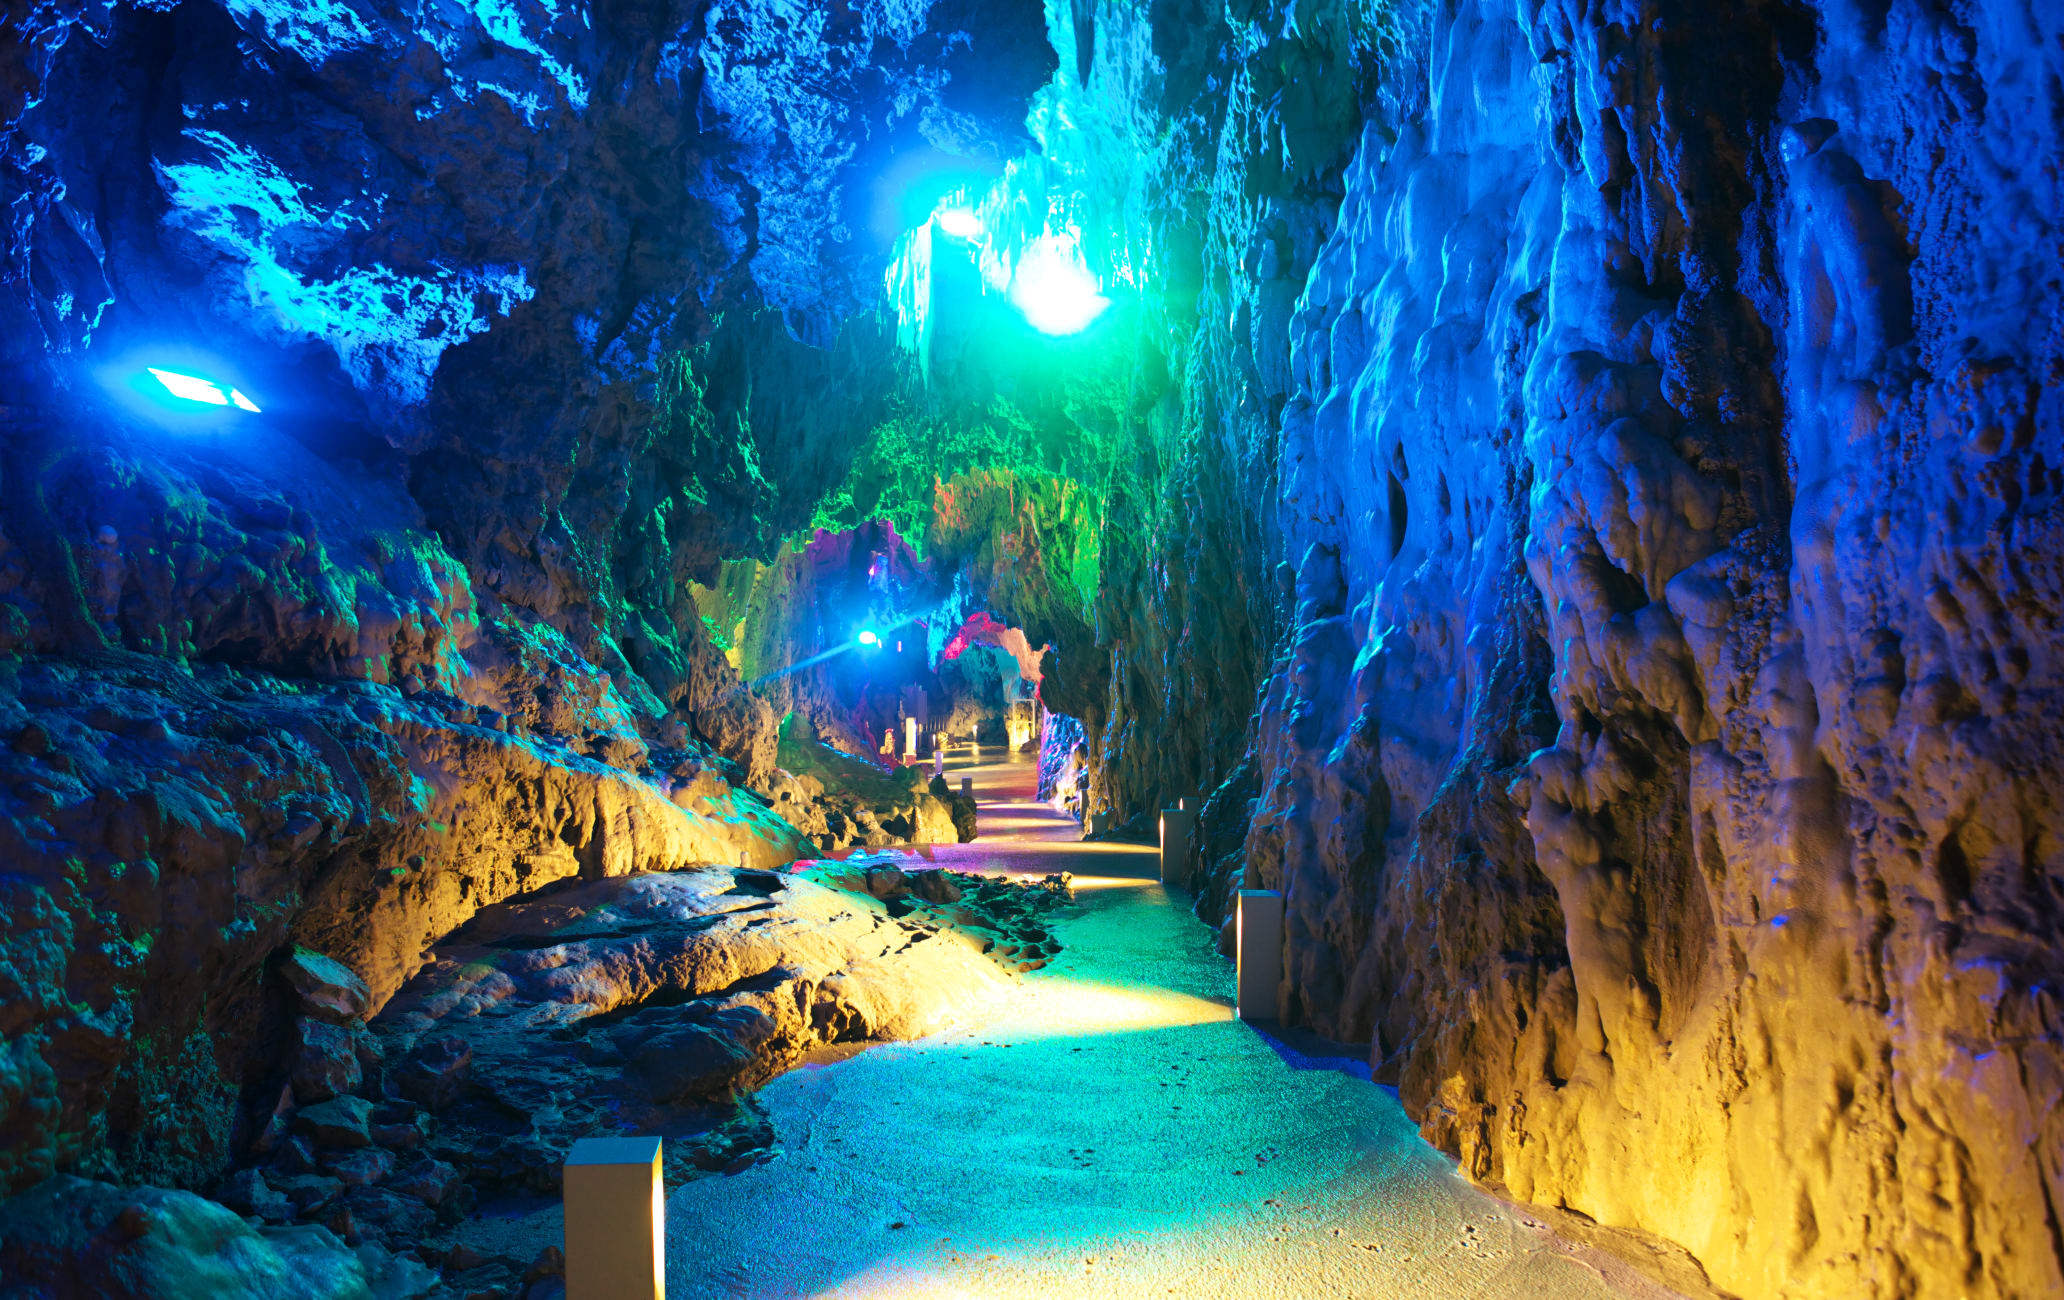 Ryusen-do Cave